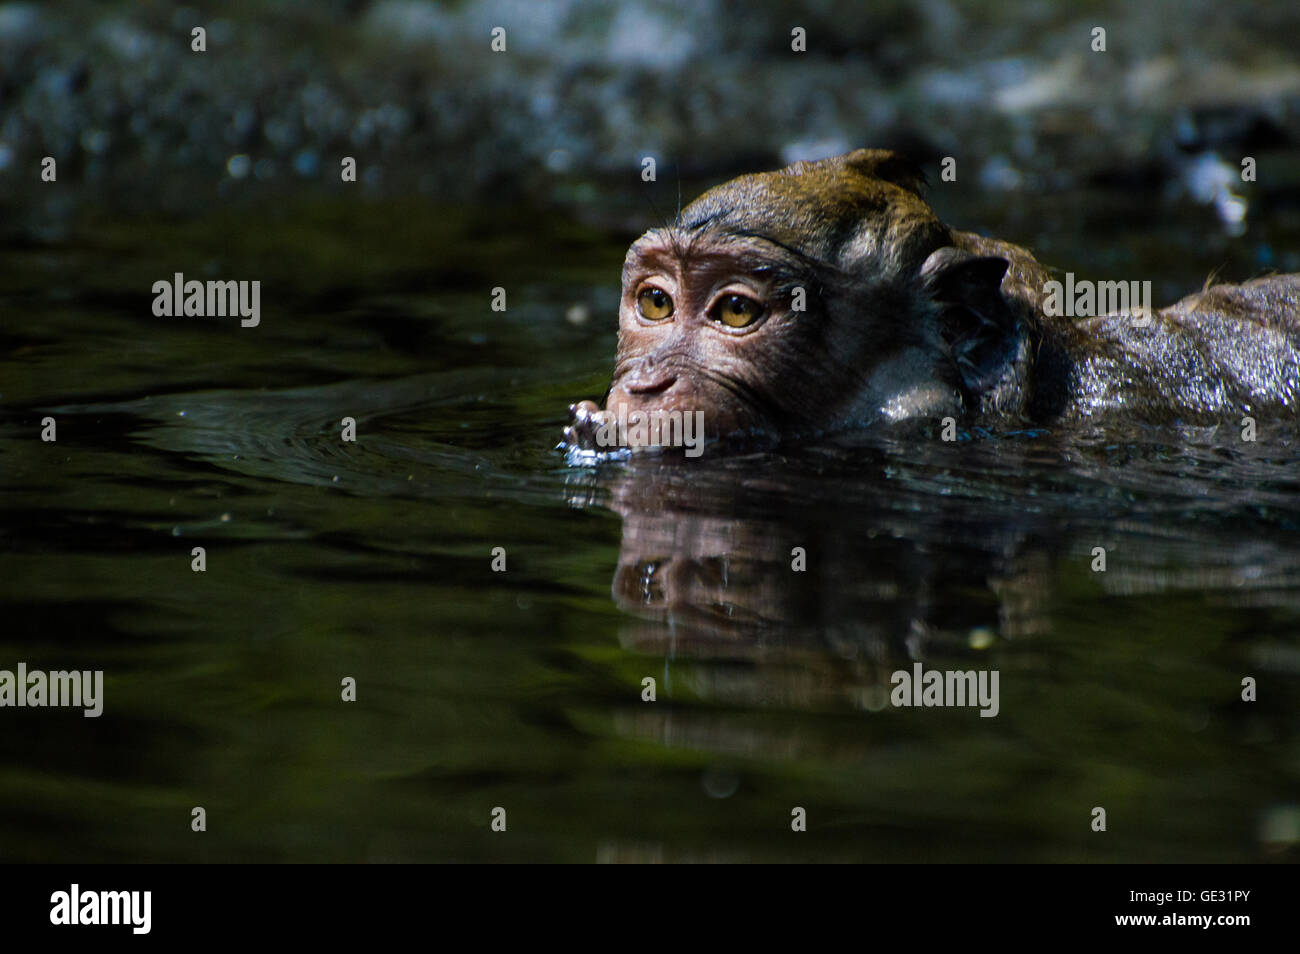 Monkey takes a bath Stock Photo